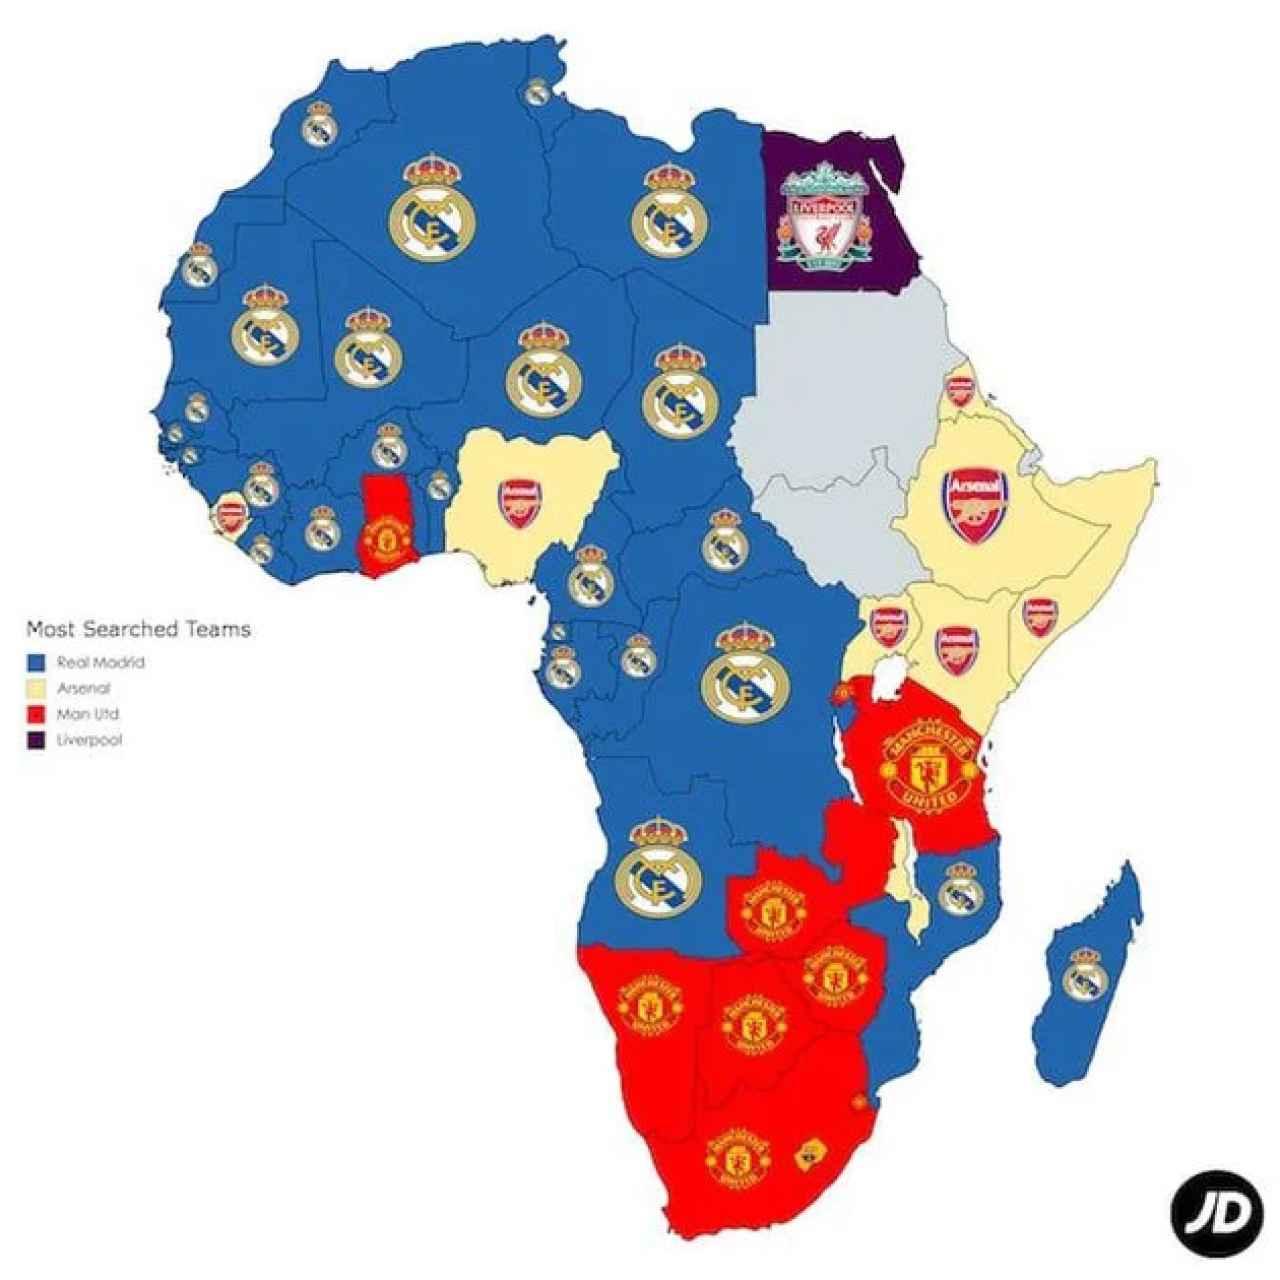 Mapa de África con los equipos de fútbol favoritos de cada país